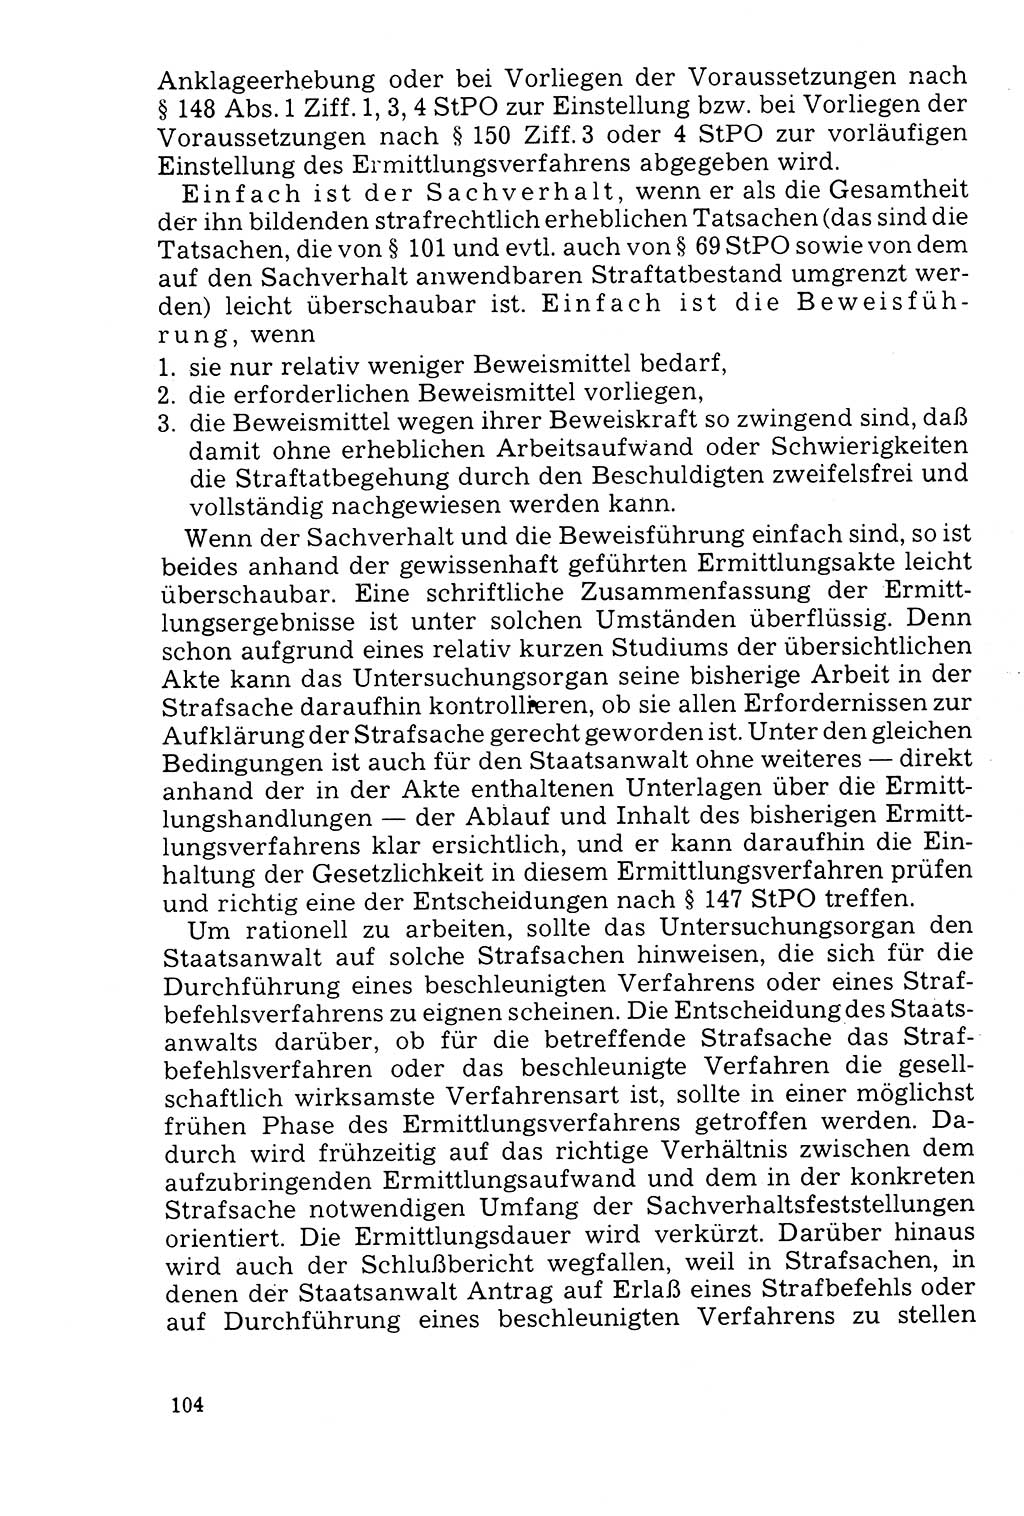 Der Abschluß des Ermittlungsverfahrens [Deutsche Demokratische Republik (DDR)] 1978, Seite 104 (Abschl. EV DDR 1978, S. 104)